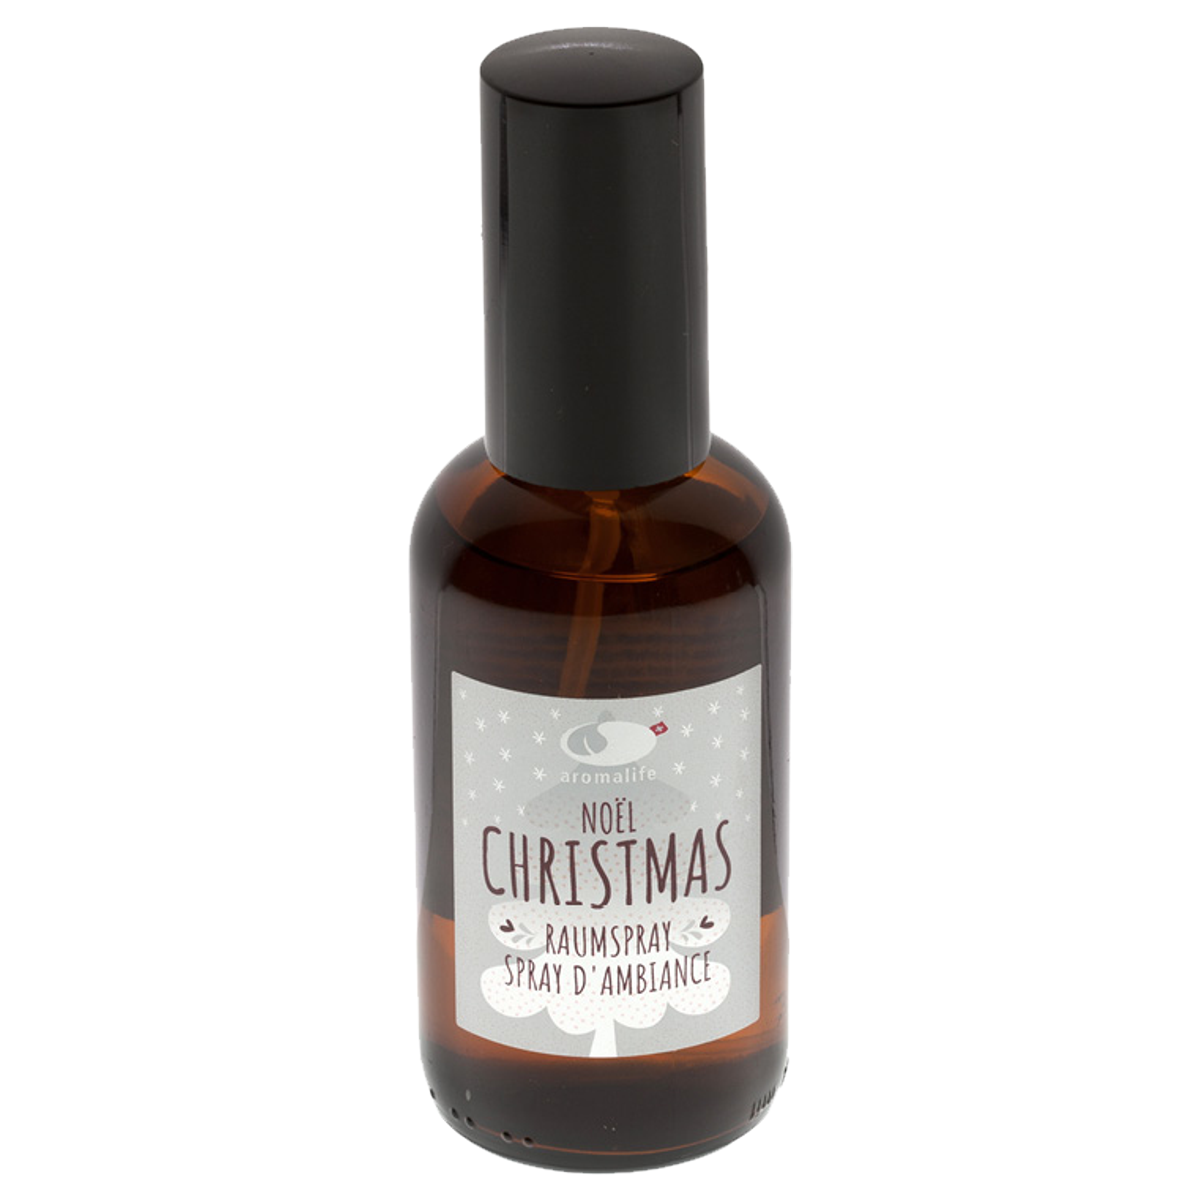 Aromalife Raumspray Christmas 100 ml